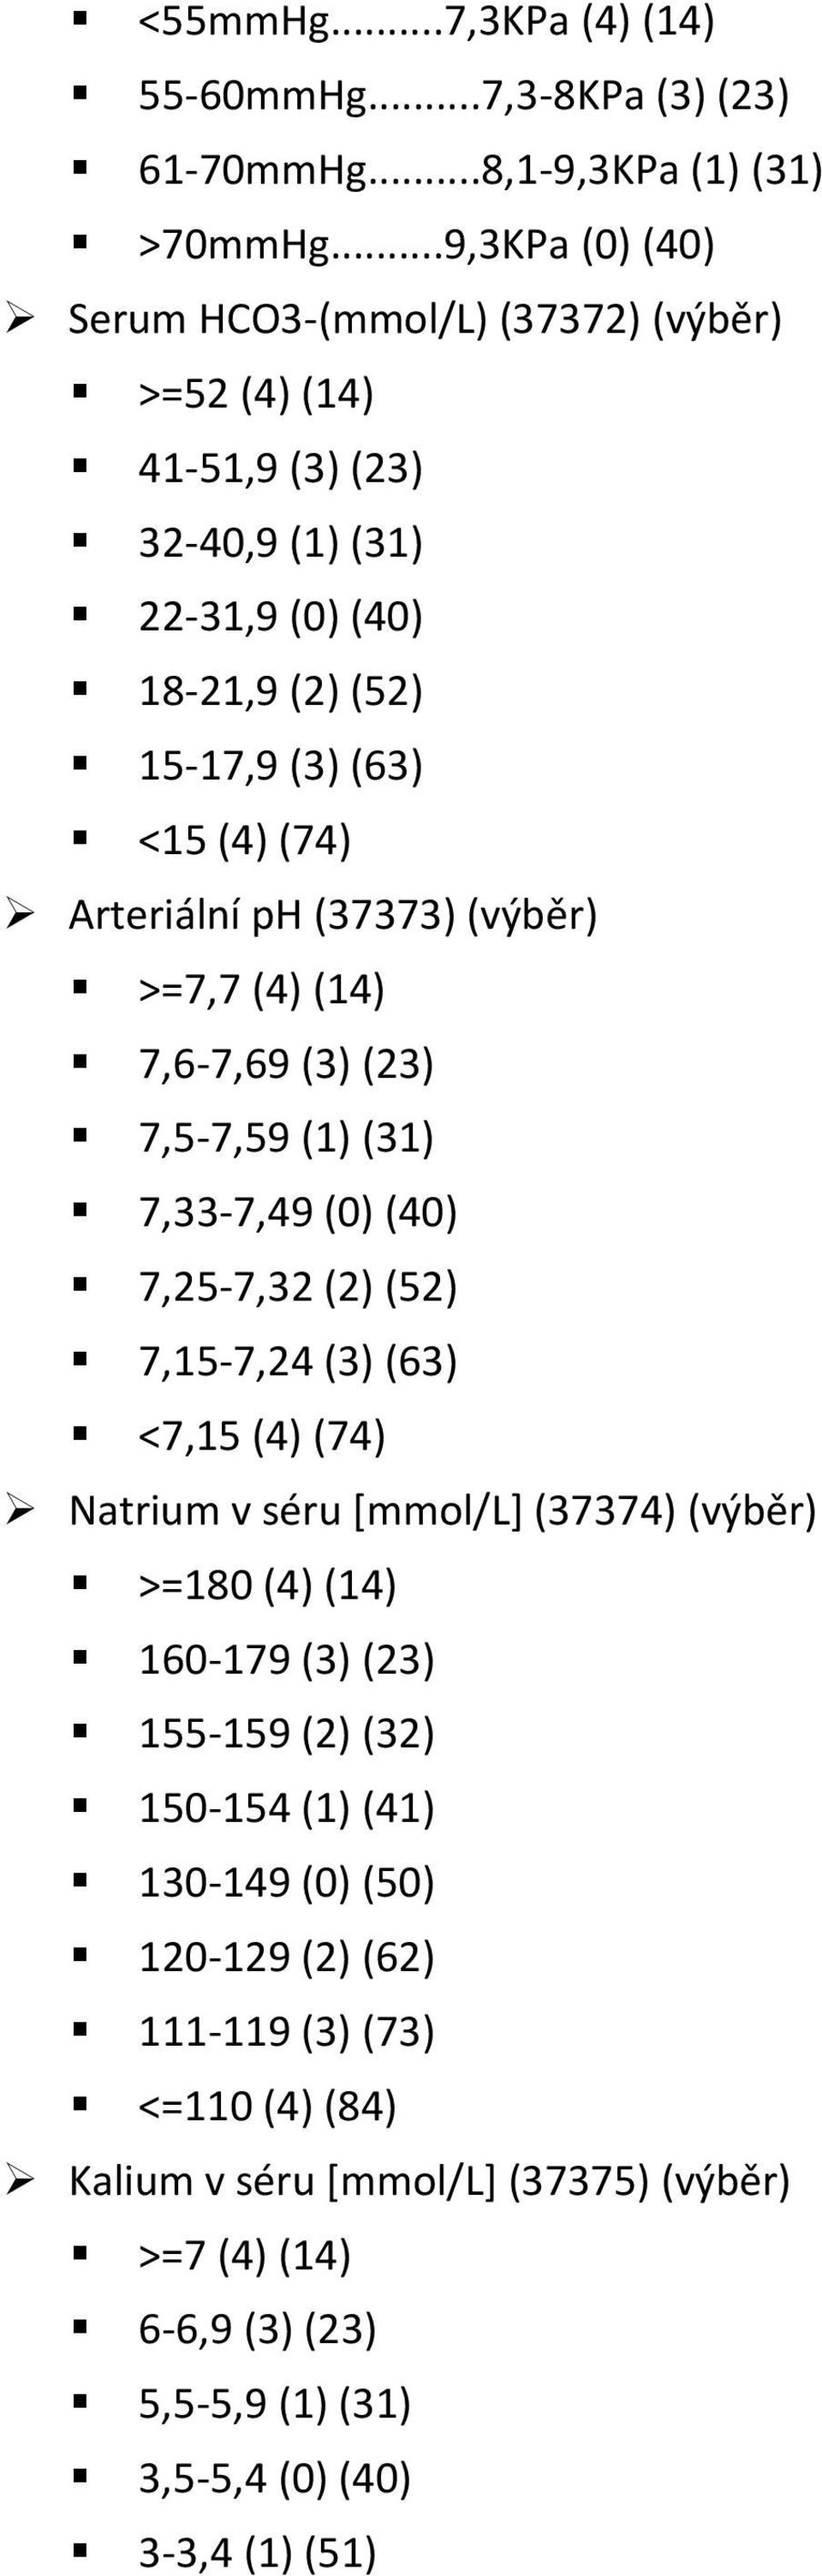 Arteriální ph (37373) (výběr) >=7,7 (4) (14) 7,6-7,69 (3) (23) 7,5-7,59 (1) (31) 7,33-7,49 (0) (40) 7,25-7,32 (2) (52) 7,15-7,24 (3) (63) <7,15 (4) (74) Natrium v séru